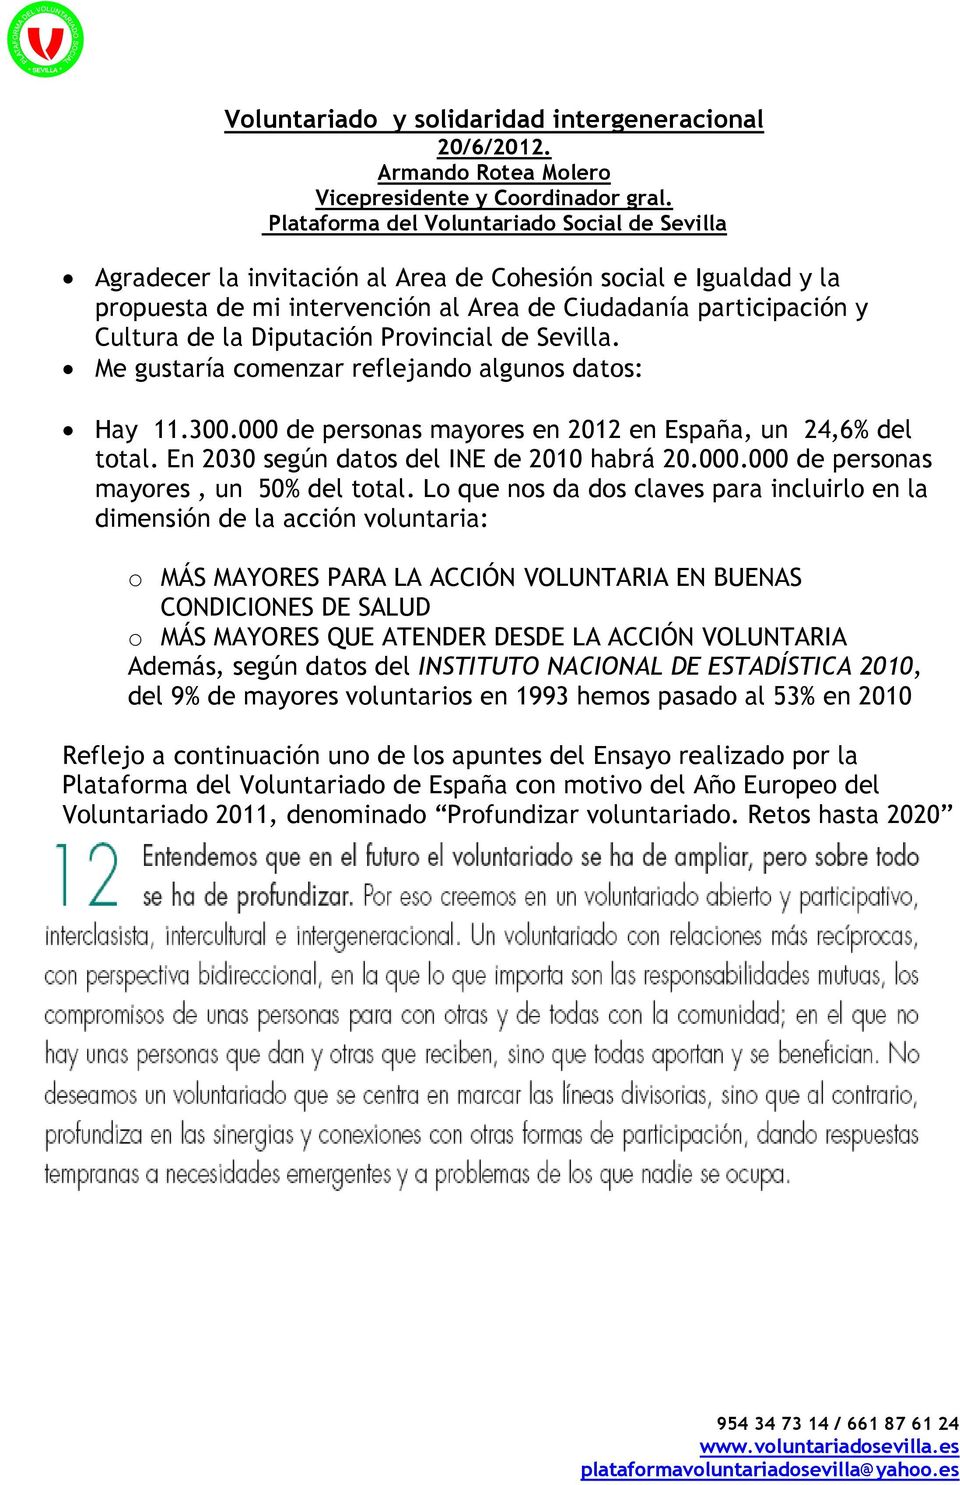 Diputación Provincial de Sevilla. Me gustaría comenzar reflejando algunos datos: Hay 11.300.000 de personas mayores en 2012 en España, un 24,6% del total. En 2030 según datos del INE de 2010 habrá 20.